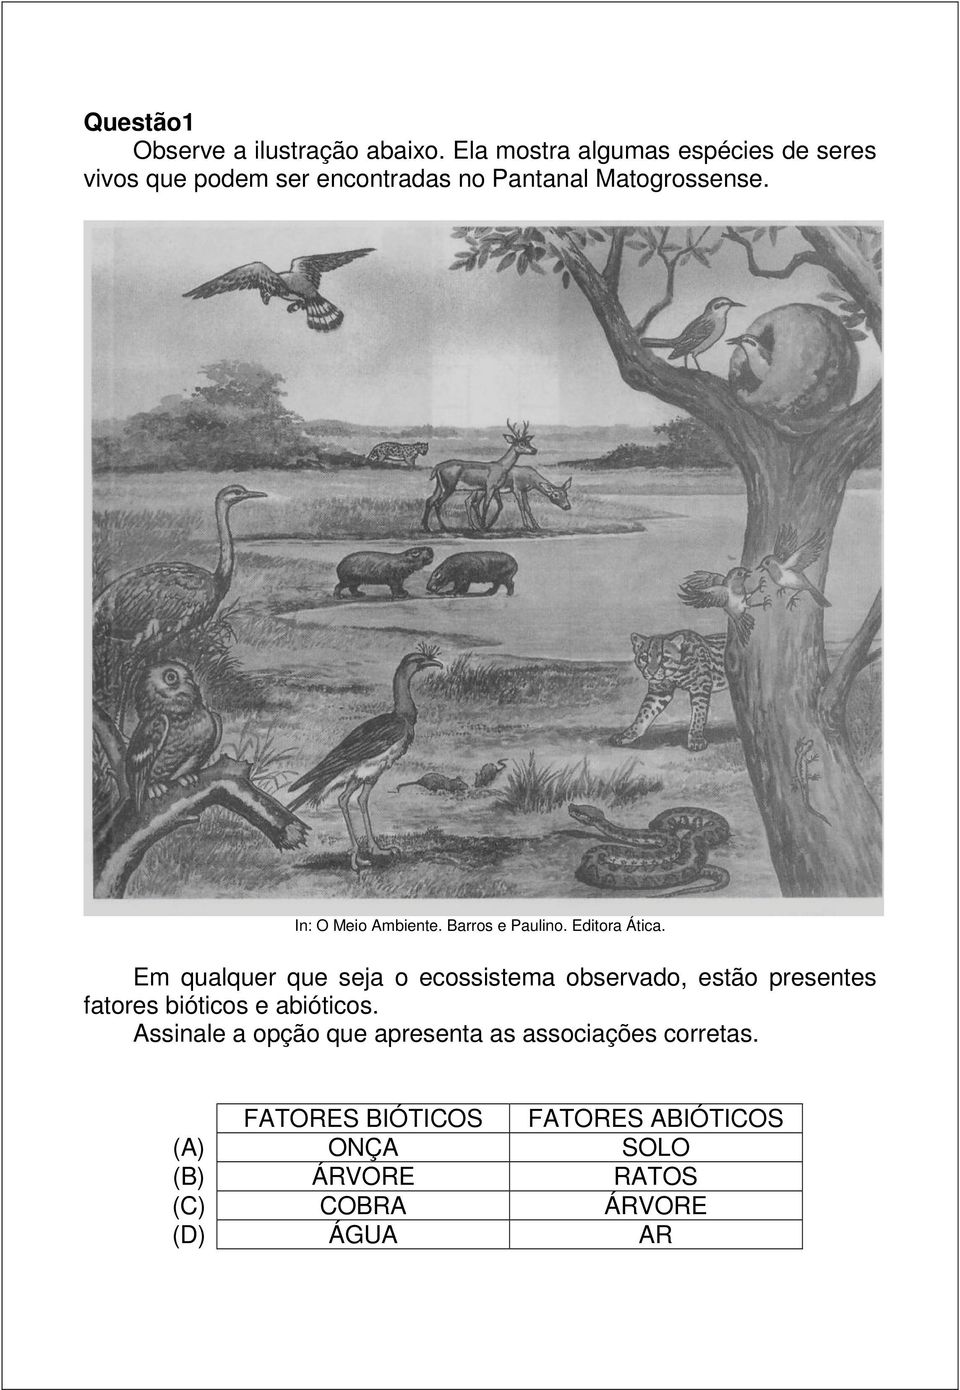 In: O Meio Ambiente. Barros e Paulino. Editora Ática.